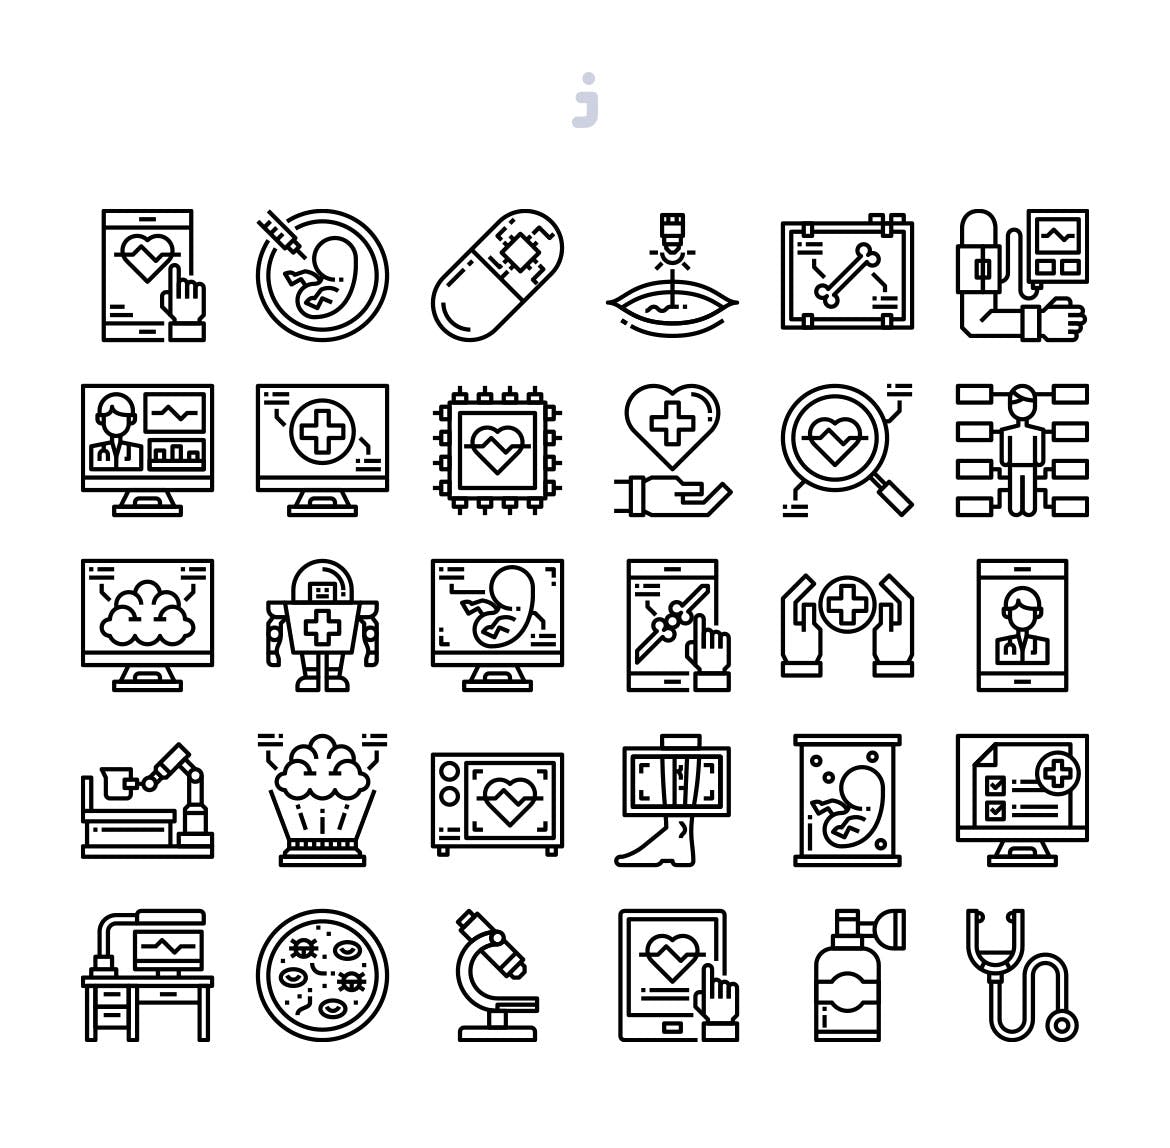 30枚医疗技术彩色矢量图标素材 30 Medical Technology Icons插图(2)